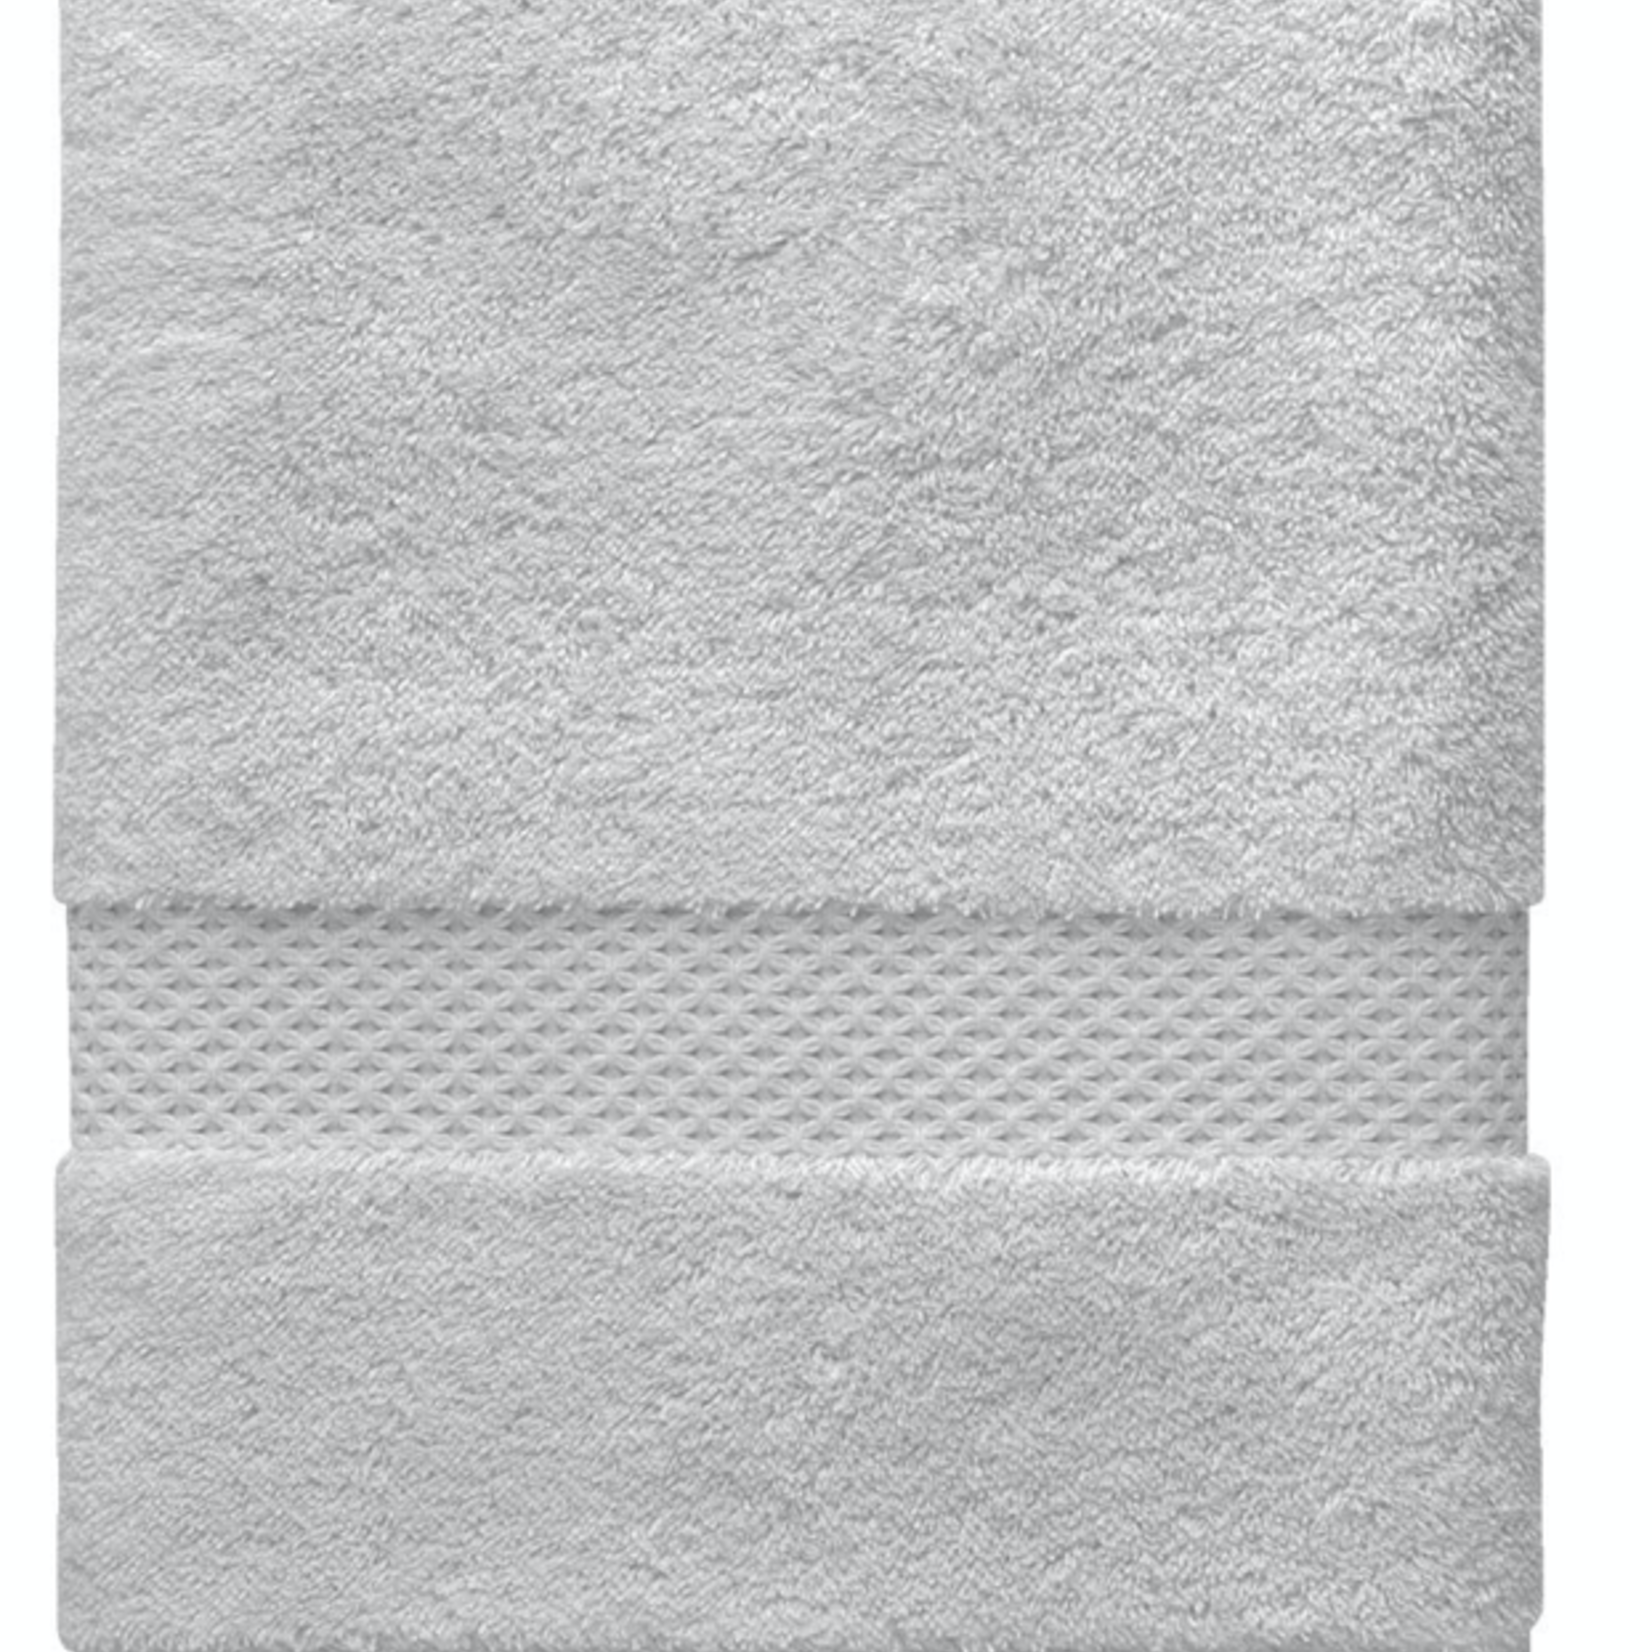 ETOILE (83% cotton, 17% modal) Guest Towel